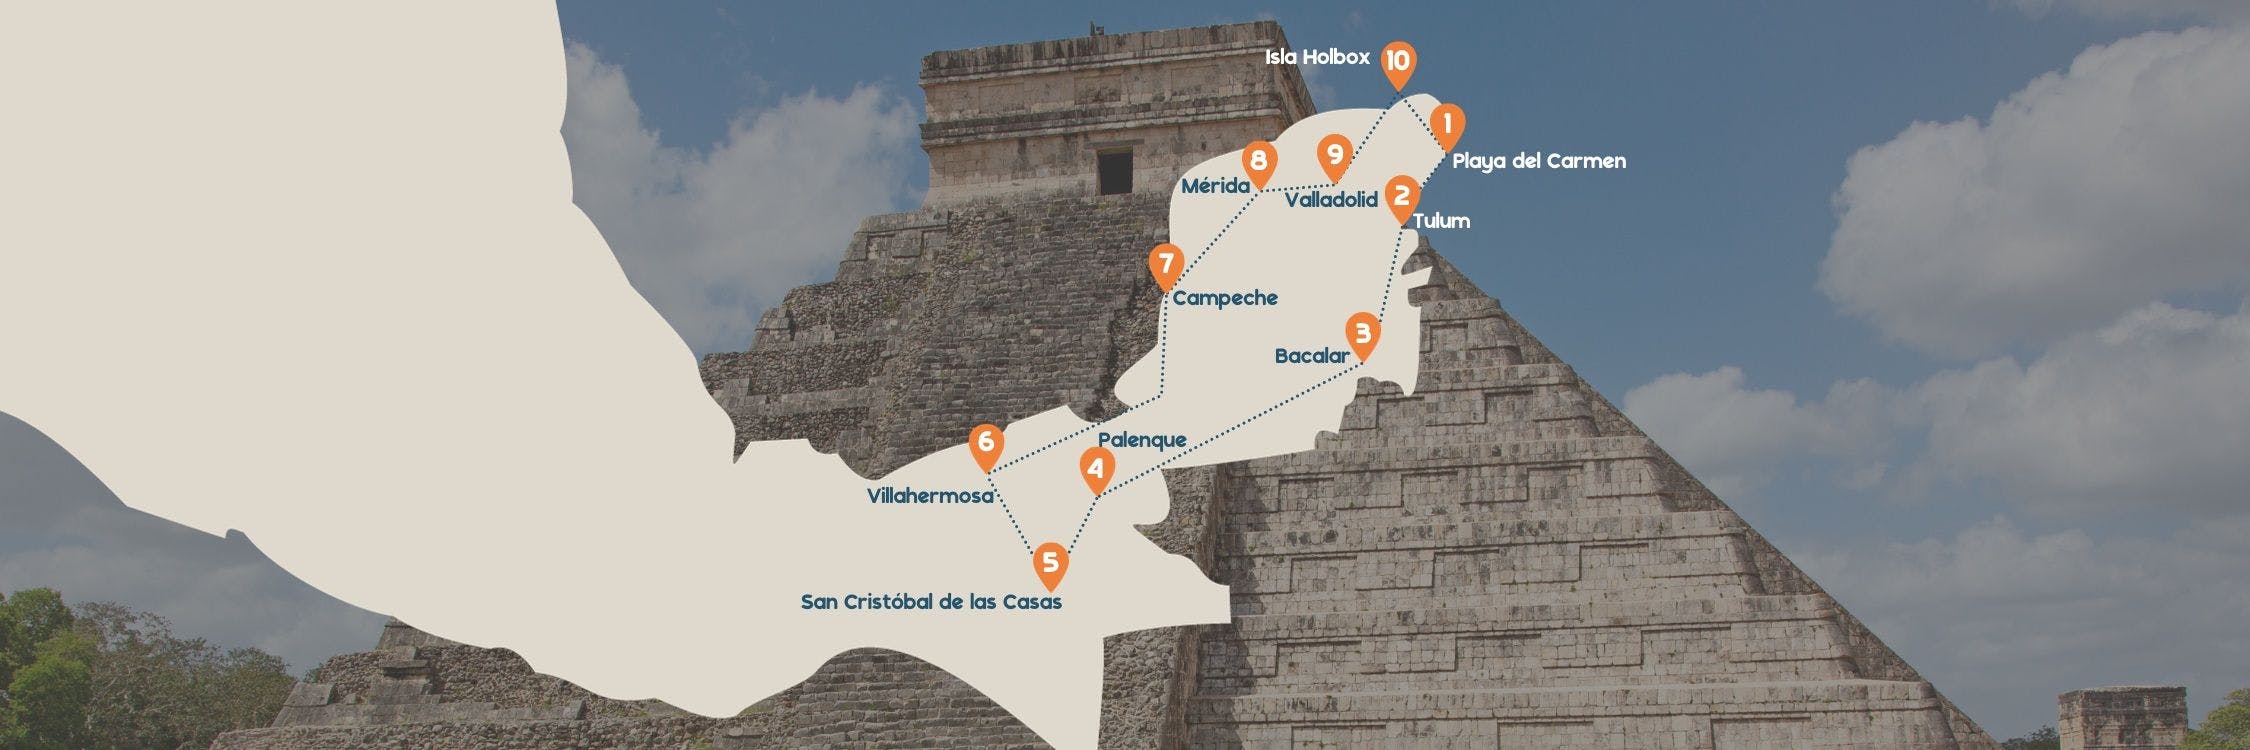 Routekaartje desktop Mexico met chichen itza achtergrond